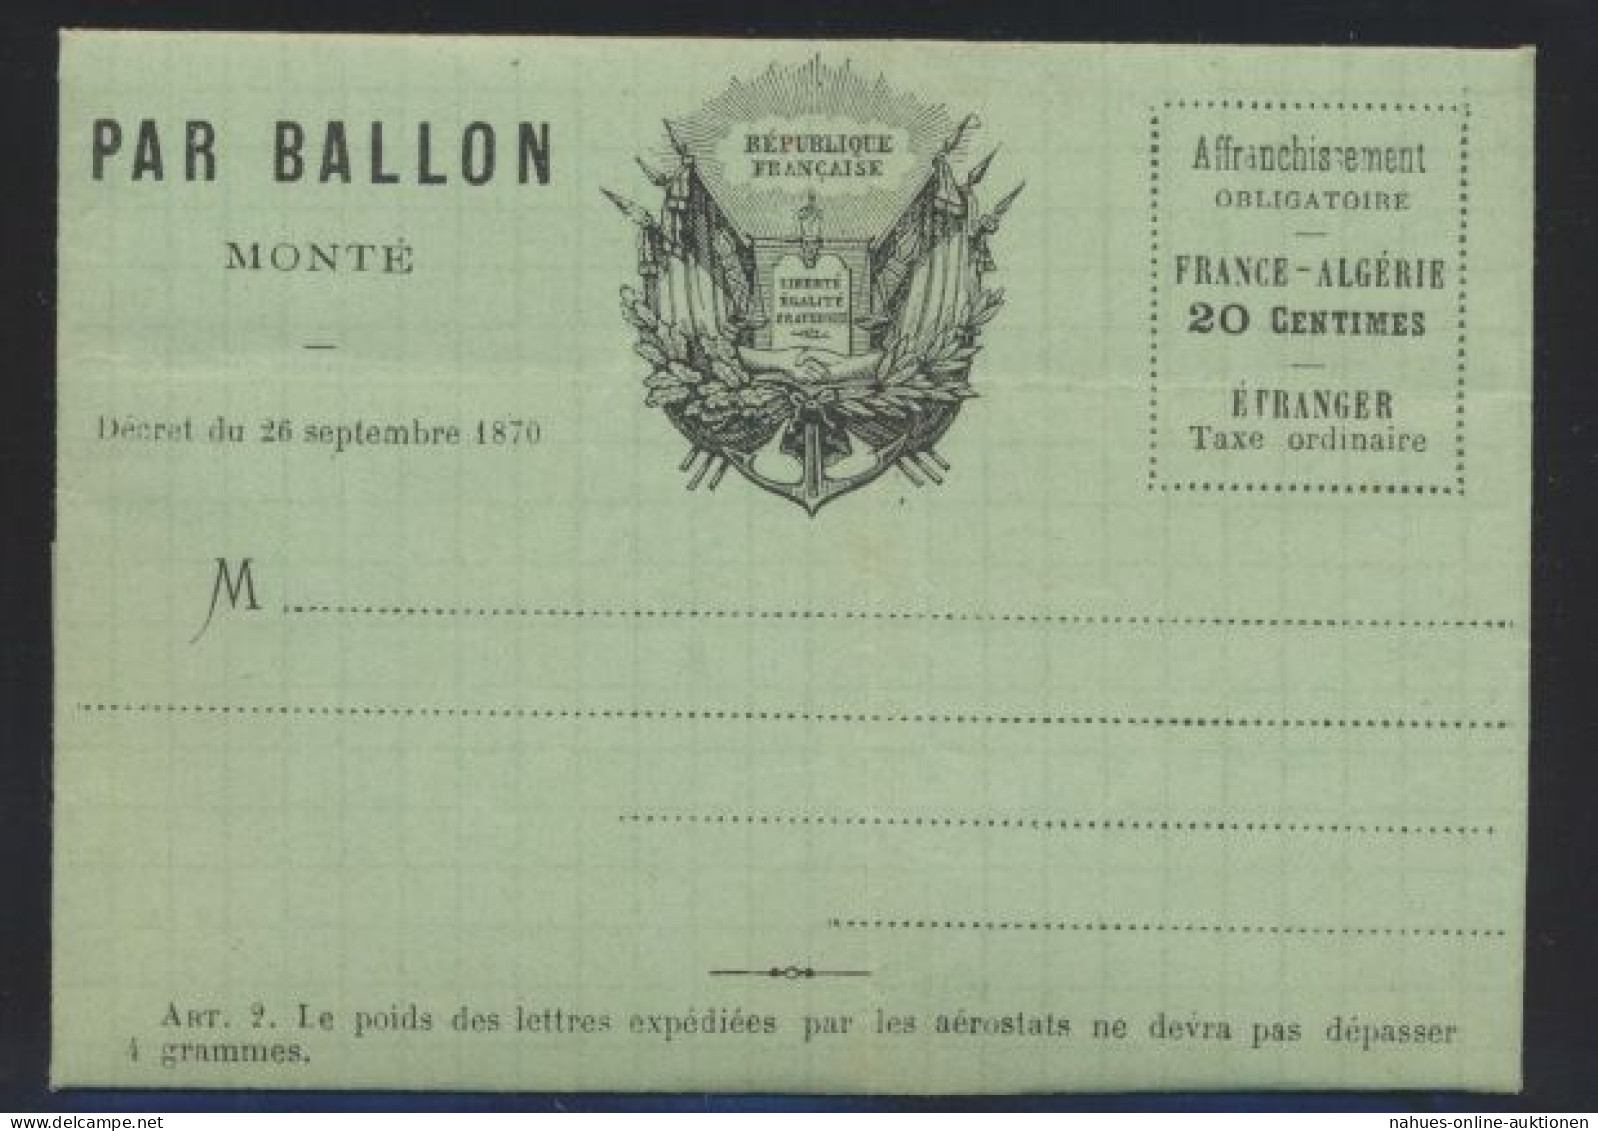 Flugpost Air Mail Ballonpost Ballon Monte Frankreich France 20 C. Faltbrief Von - Cartas & Documentos